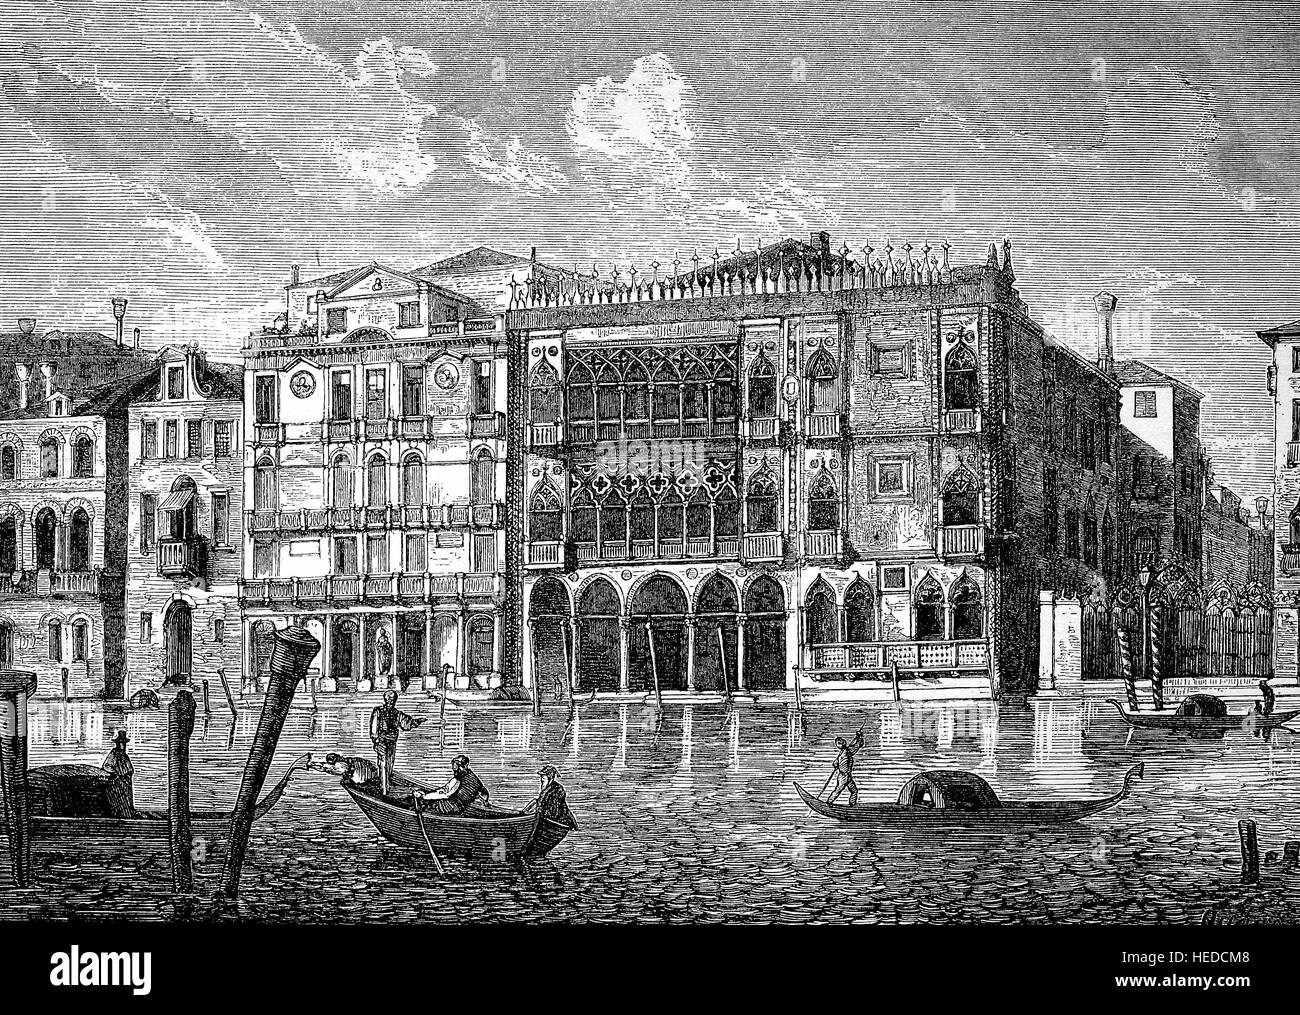 Ca' d'Oro, correctamente Palazzo Santa Sofia, es un palacio en el Gran Canal de Venecia, Italia septentrional das goldene Haus, desde una xilografía de 1880, digital mejorado Foto de stock